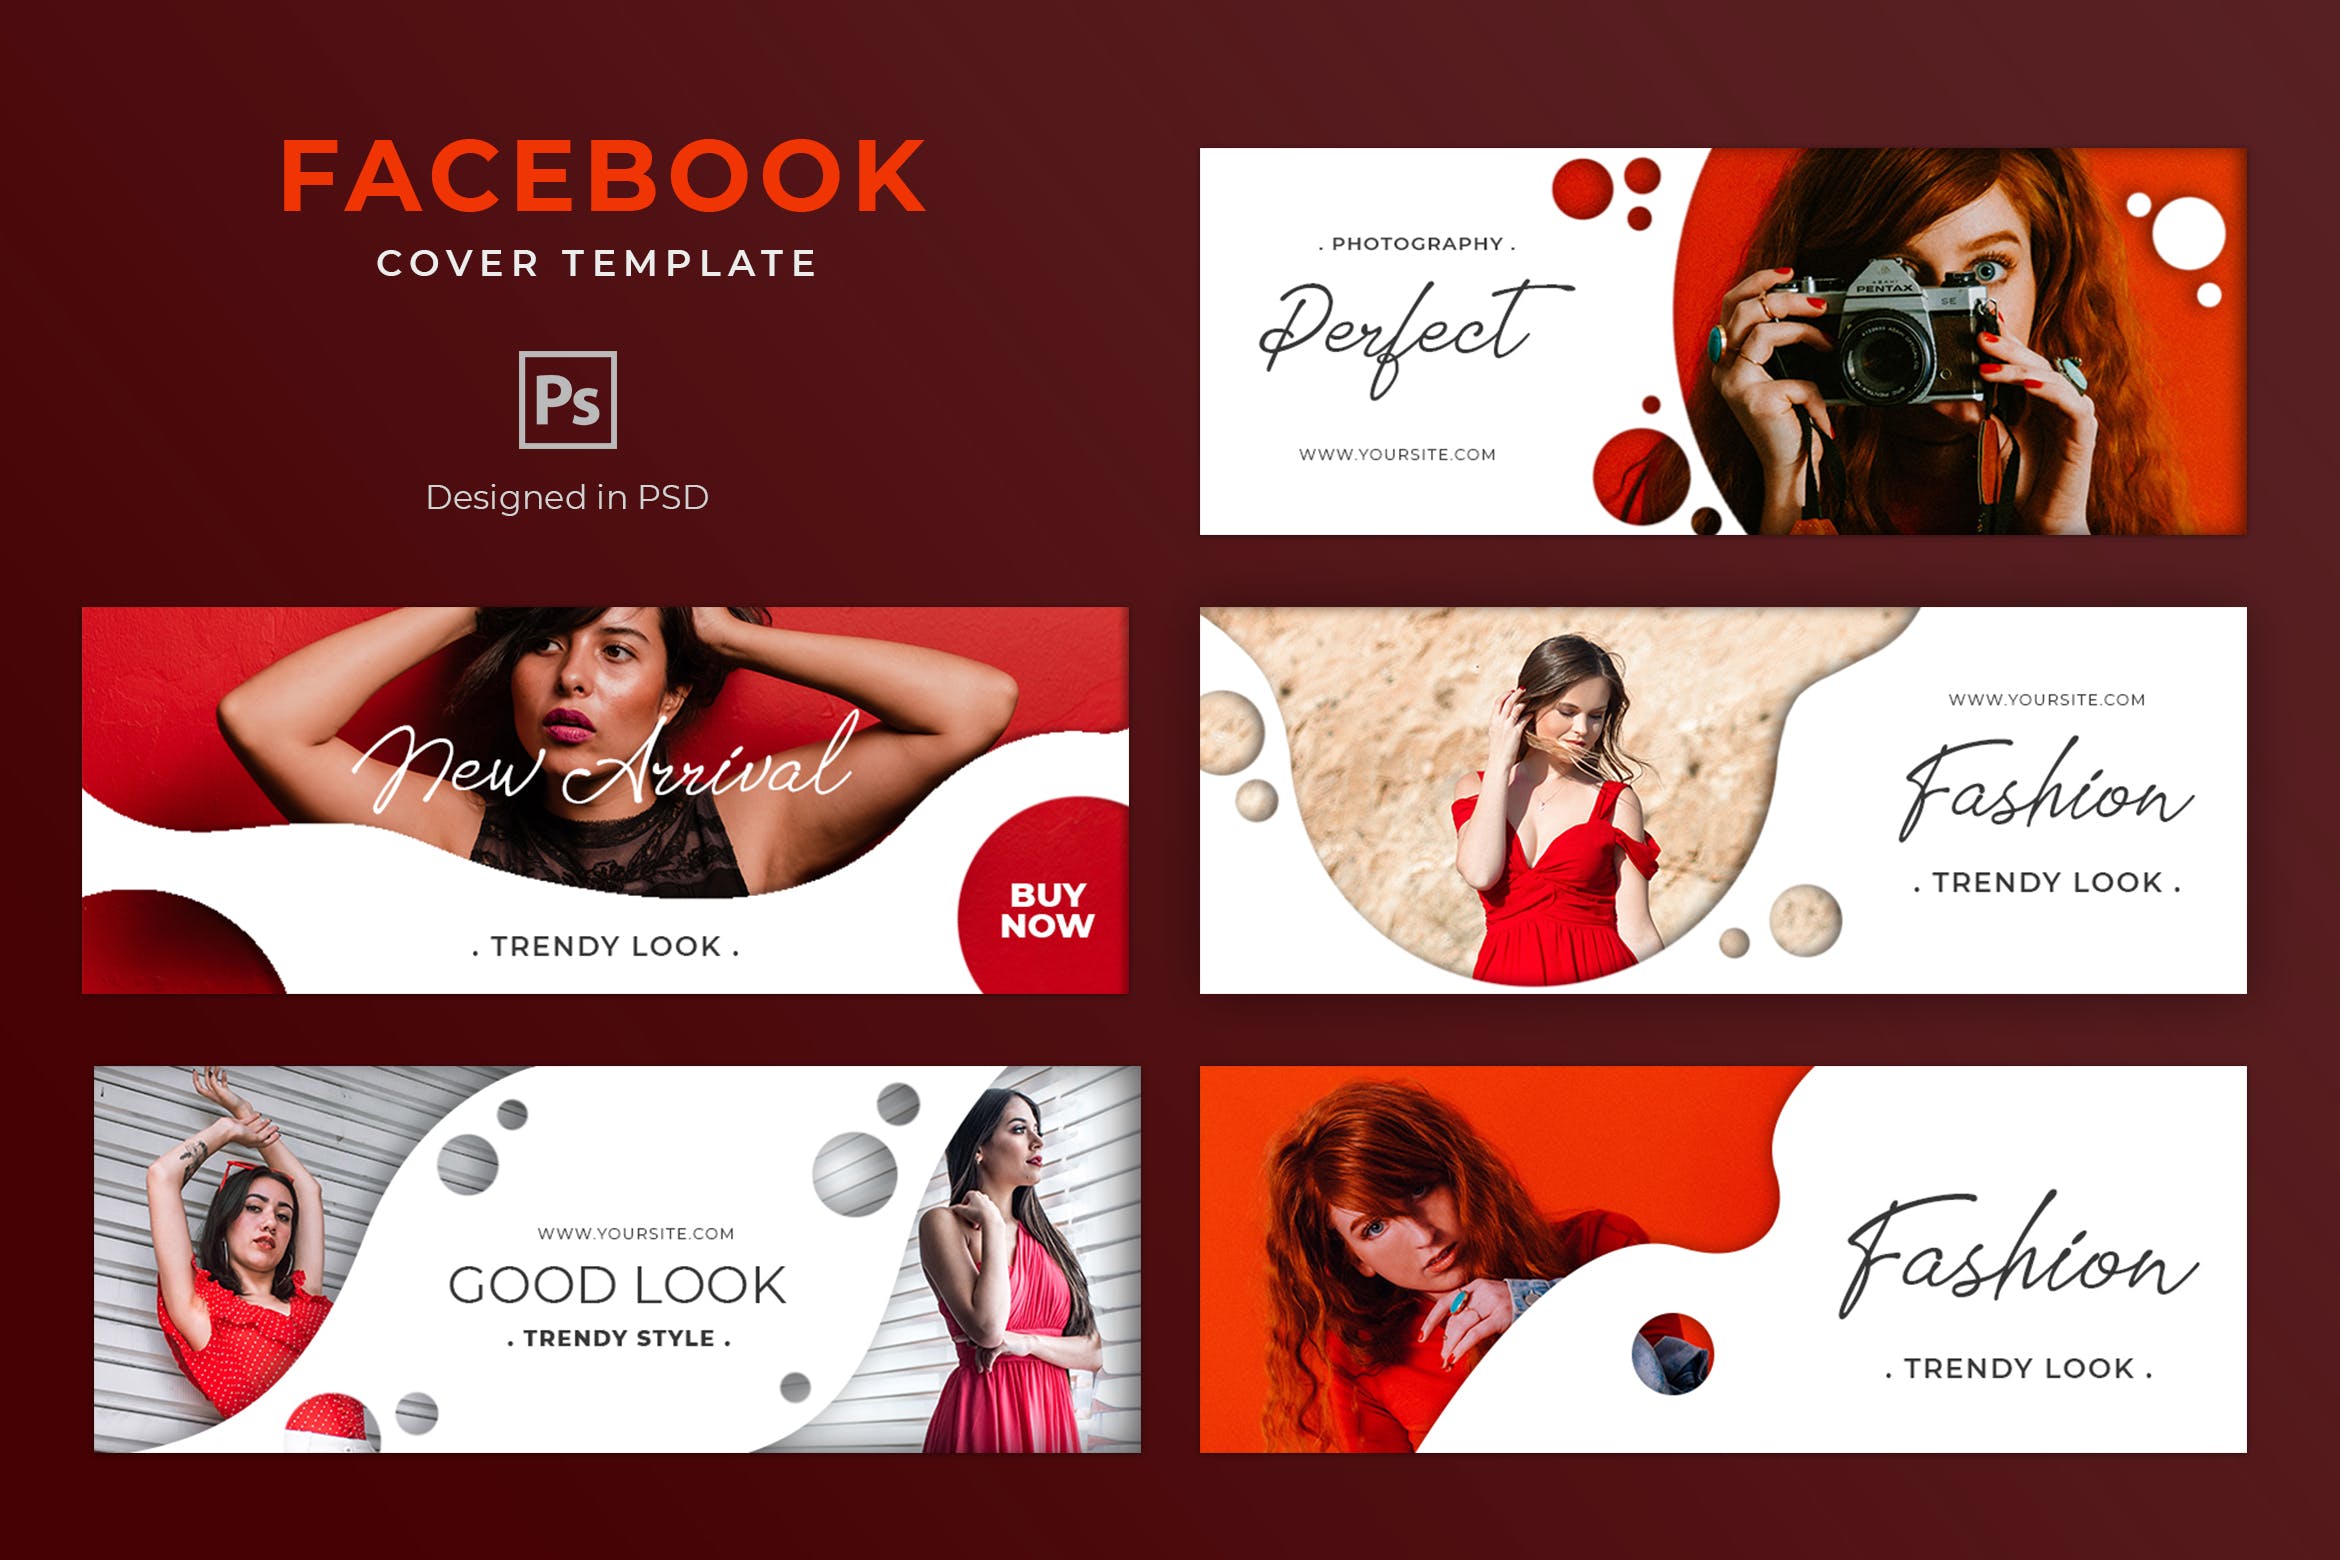 时尚奢侈品牌Facebook主页营销推广封面设计模板16设计网精选 Fashion Facebook Cover Template插图